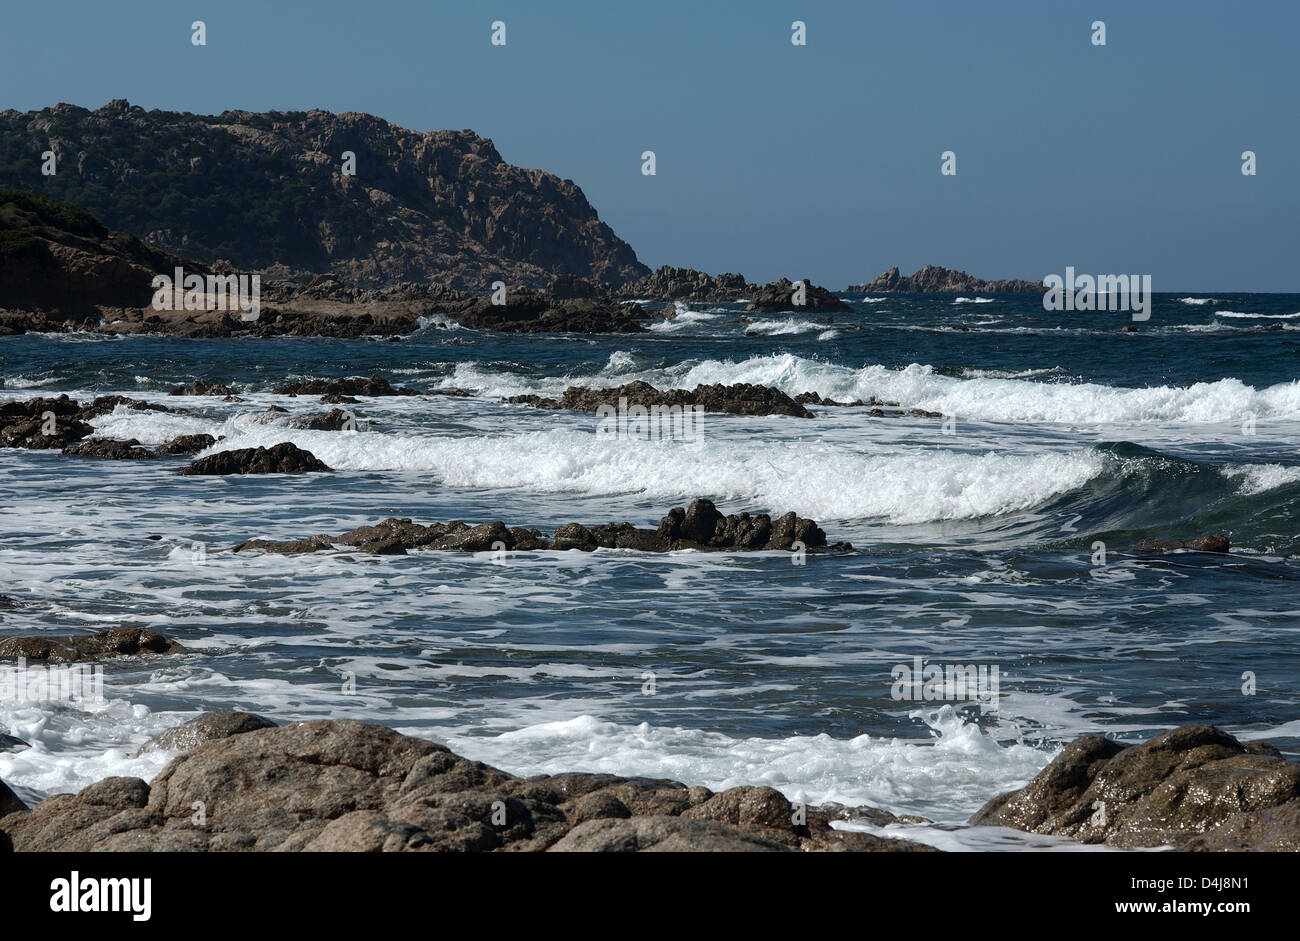 Santa Teresa, Italy, the coast in Santa Teresa di Gallura Stock Photo